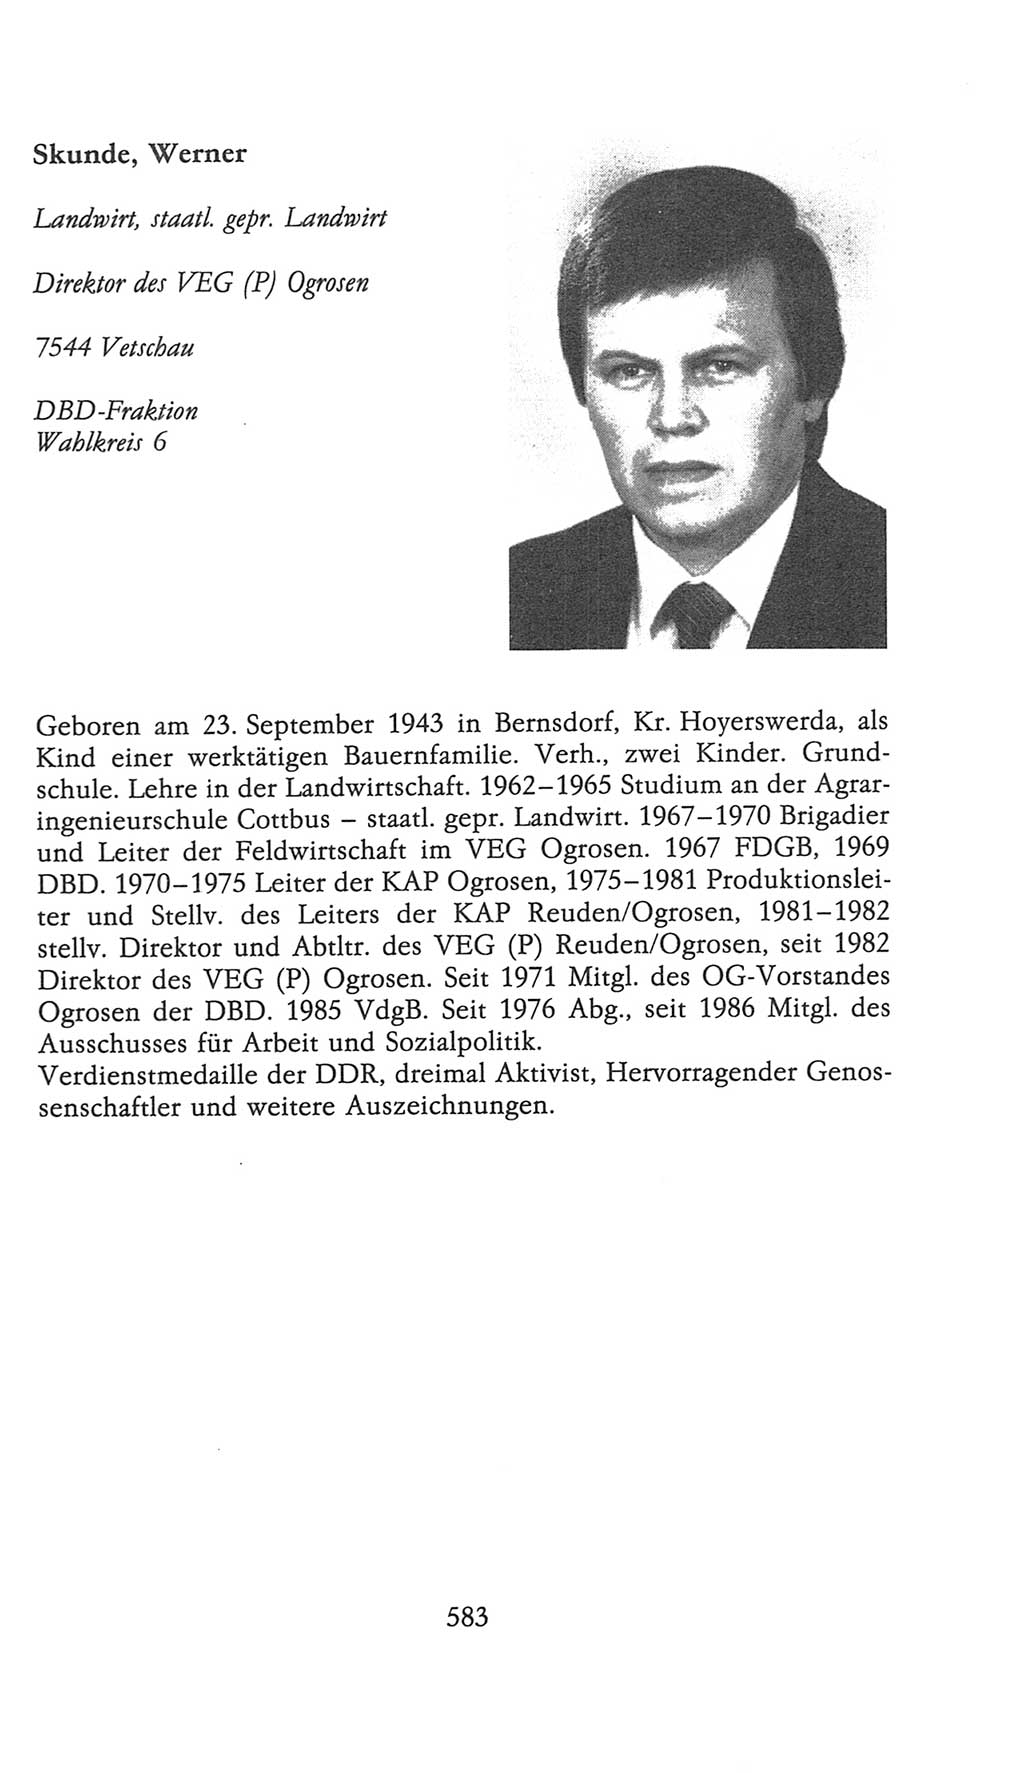 Volkskammer (VK) der Deutschen Demokratischen Republik (DDR), 9. Wahlperiode 1986-1990, Seite 583 (VK. DDR 9. WP. 1986-1990, S. 583)